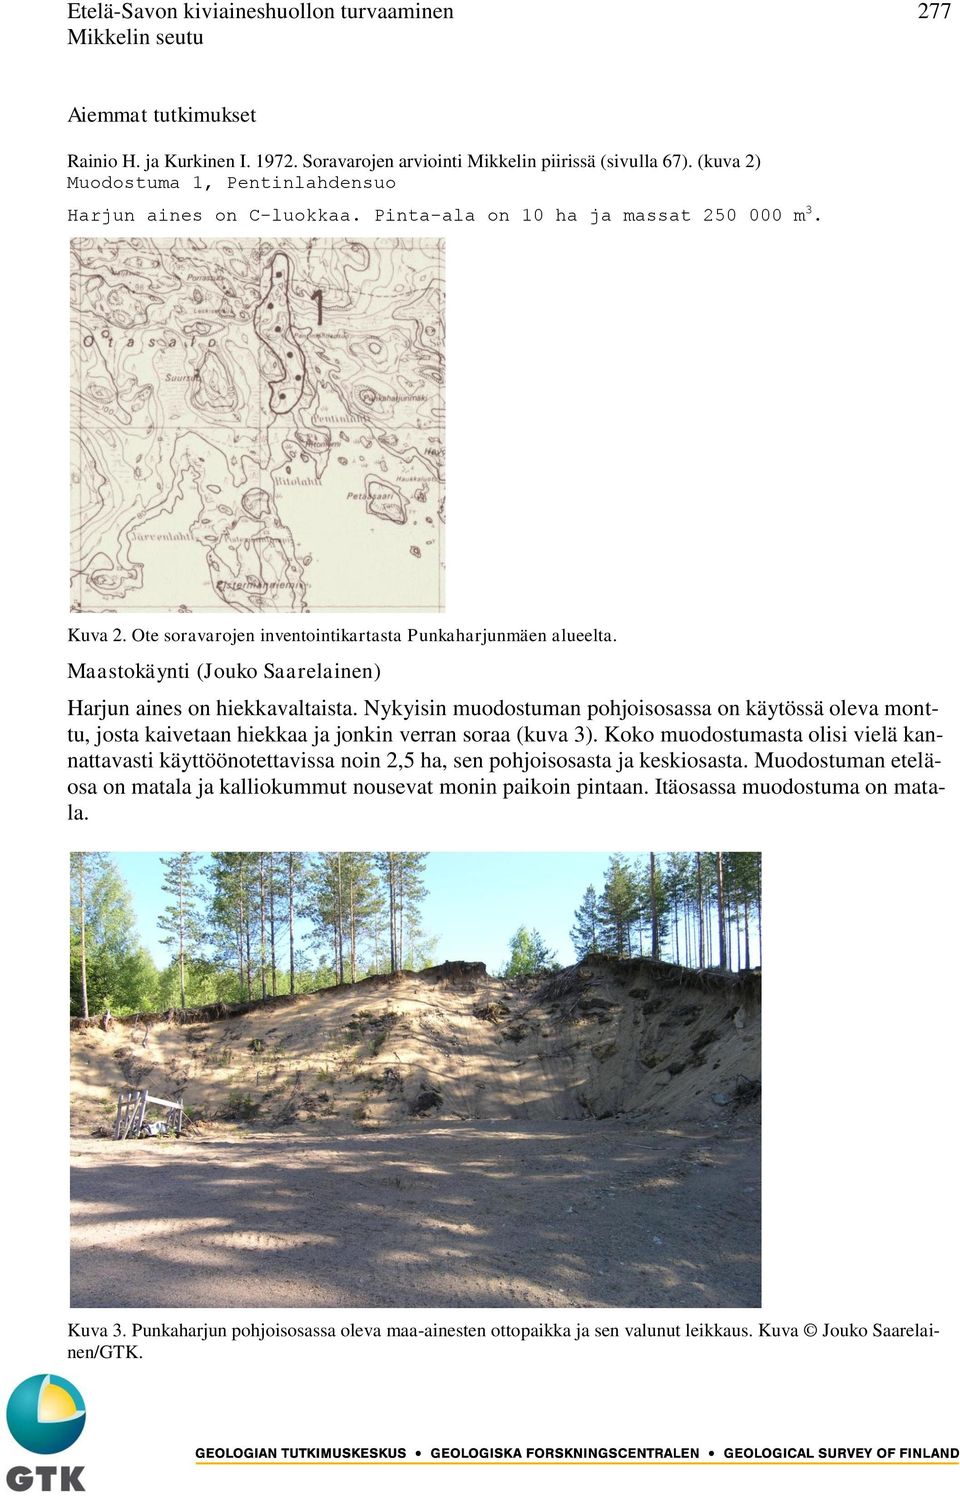 Maastokäynti (Jouko Saarelainen) Harjun aines on hiekkavaltaista. Nykyisin muodostuman pohjoisosassa on käytössä oleva monttu, josta kaivetaan hiekkaa ja jonkin verran soraa (kuva 3).